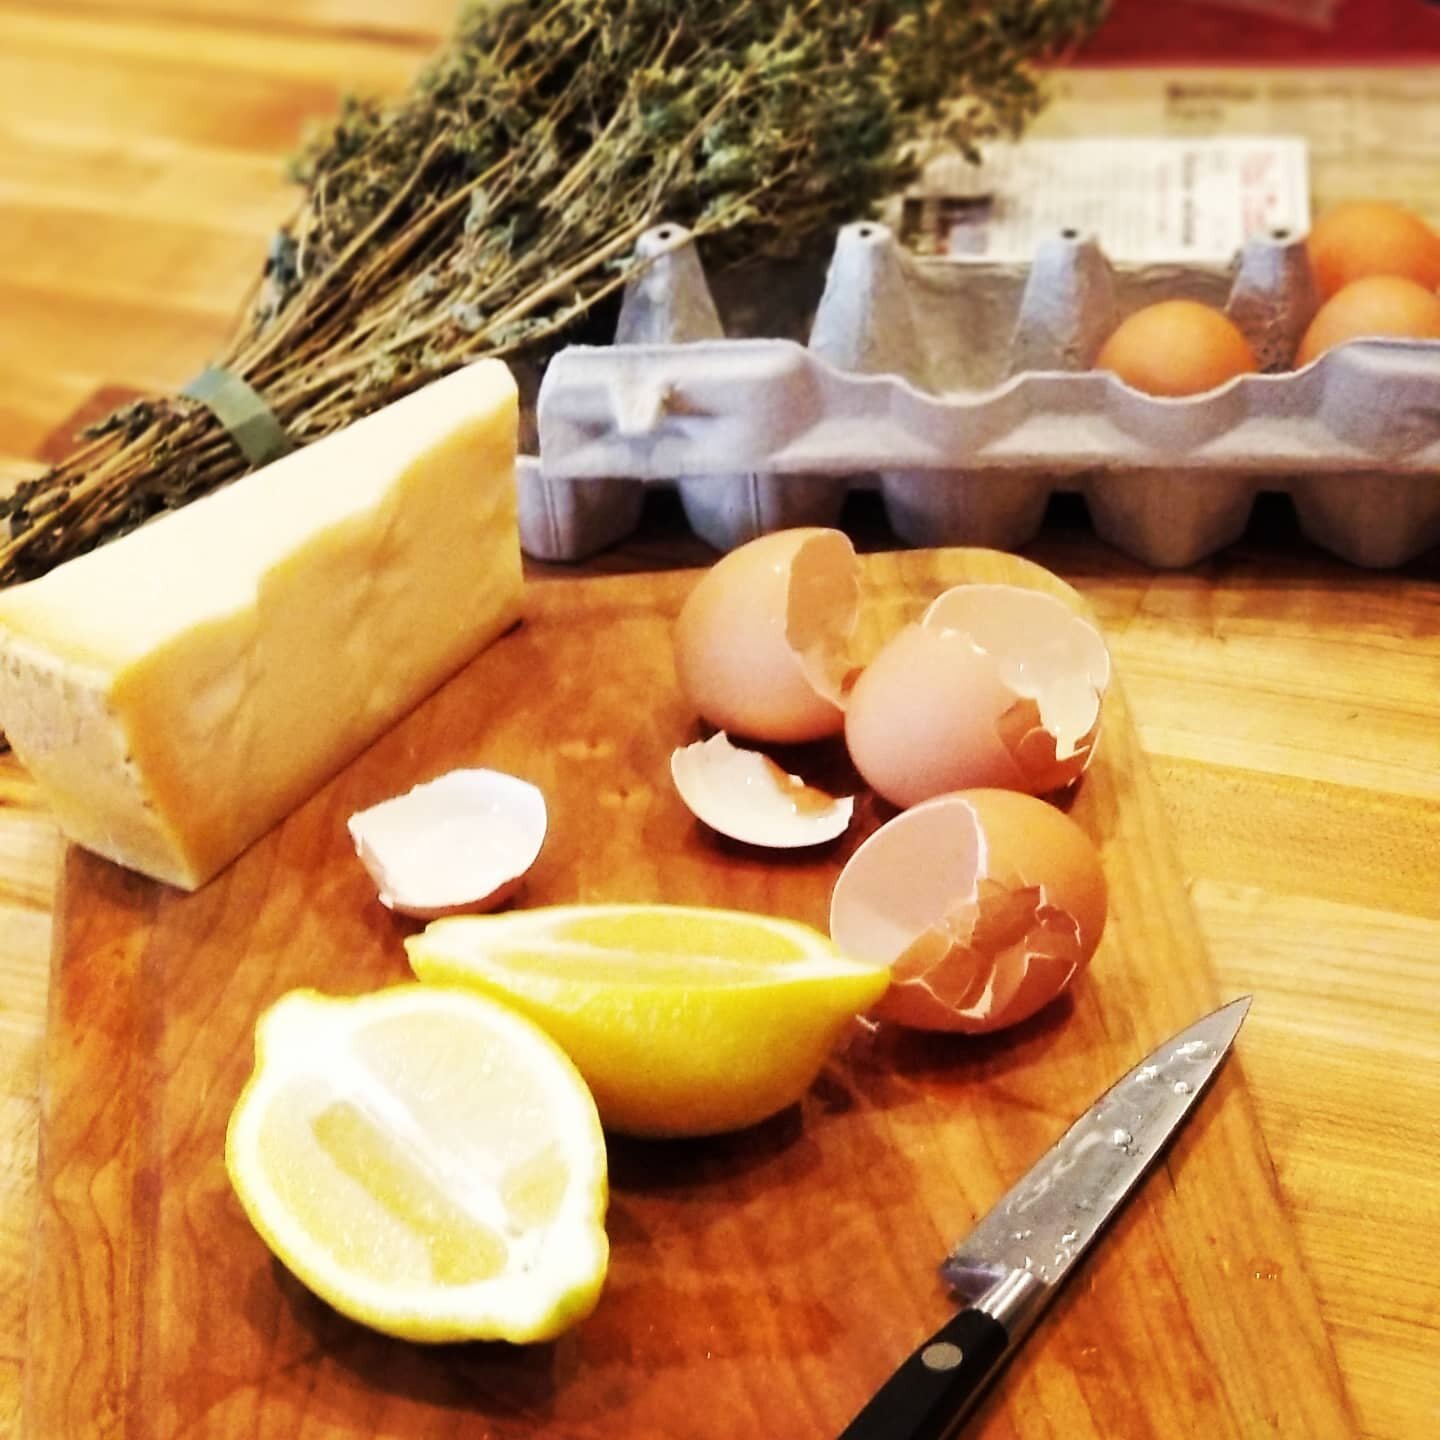 Frittatina di zucca with oregano, garlic, onion, lemon and pecorino.... yummmmmm

#eggs #frittata #zucca #zucchini #pecorino #limone #lemon #caramelization #onion